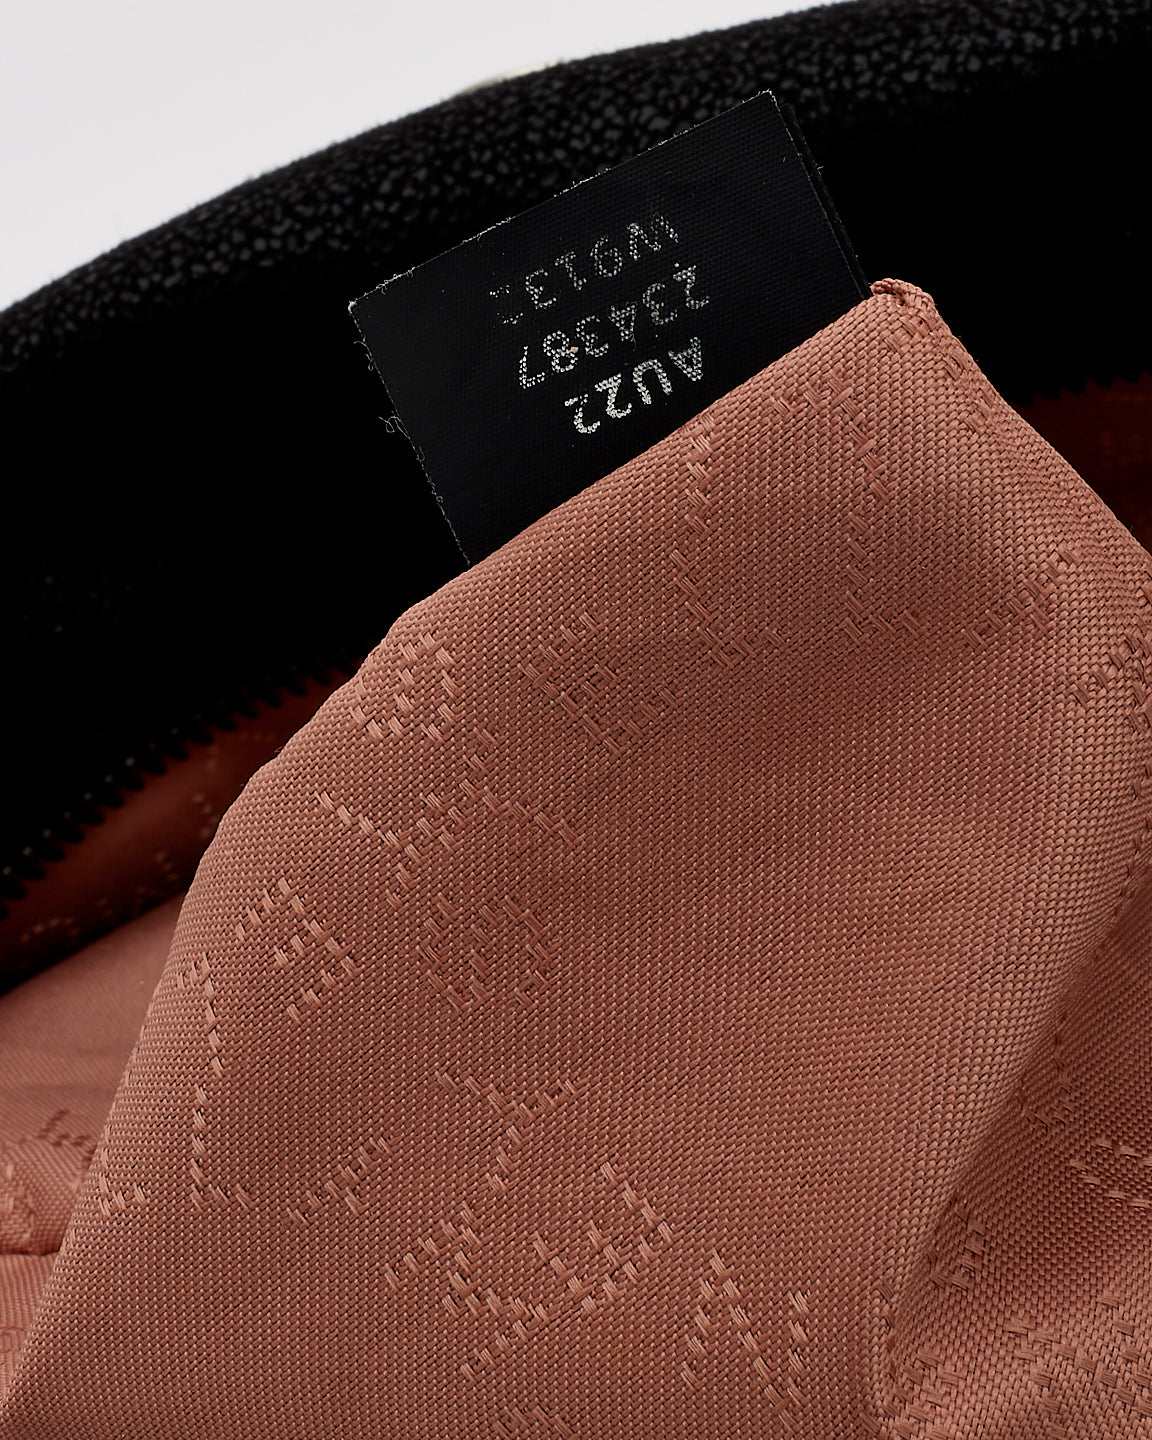 Stella McCartney Black Vegan Leather Falabella Fold Over Shoulder Bag